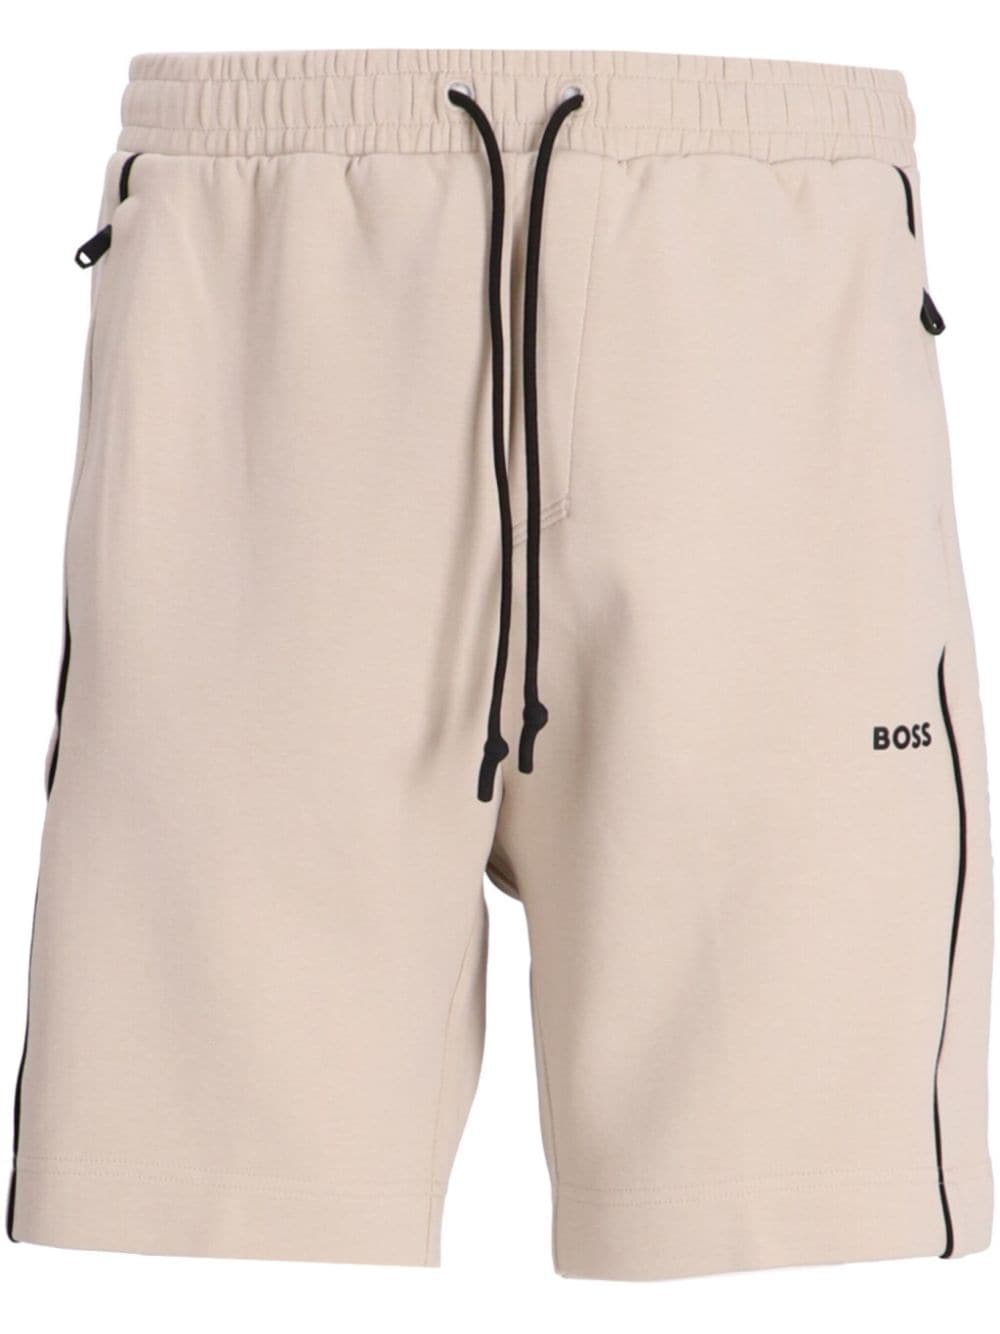 BOSS Headlo 1 shorts - Neutrals von BOSS